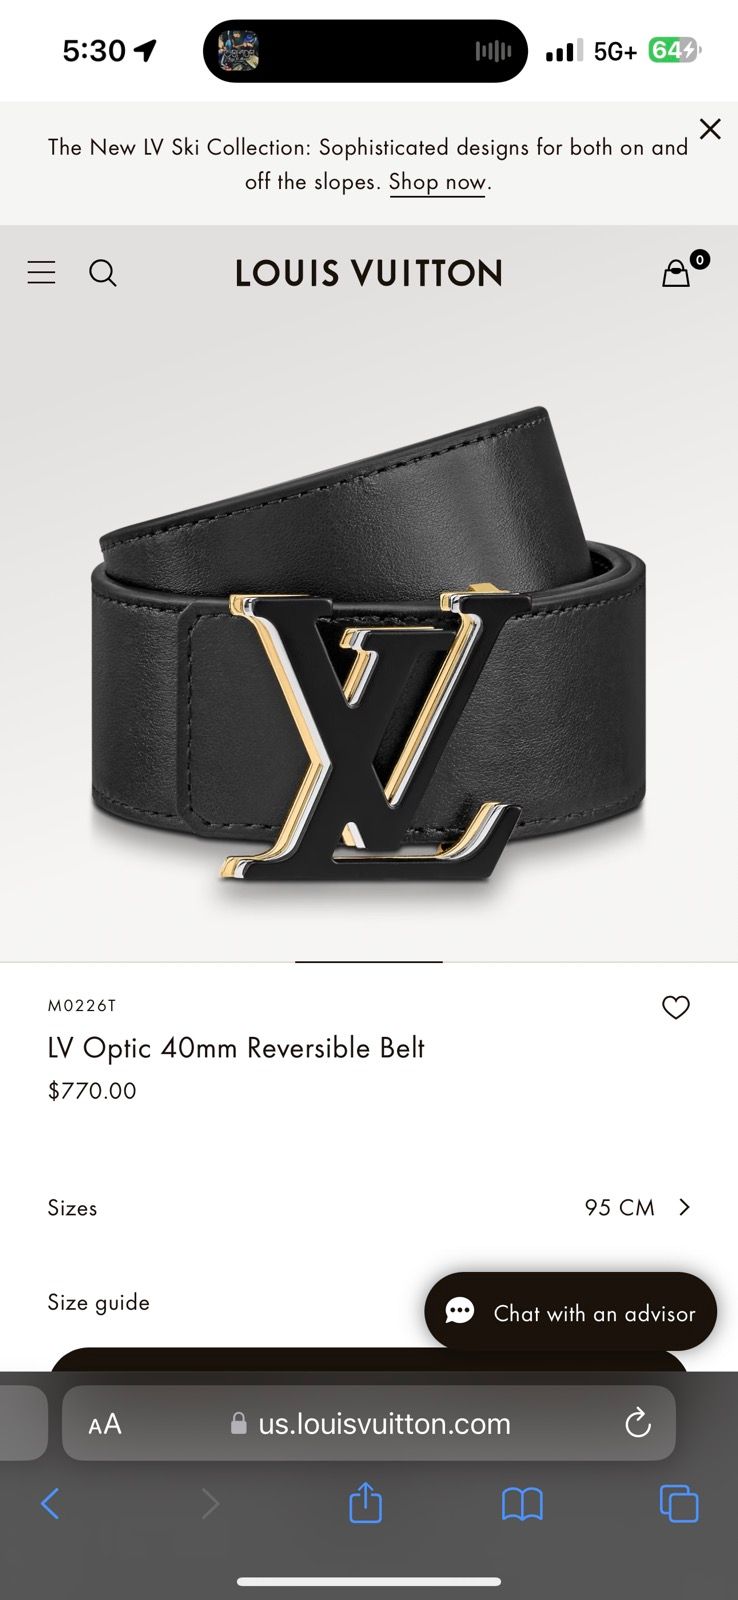 Louis Vuitton LV Optic 40mm Reversible Belt, Black, 95cm